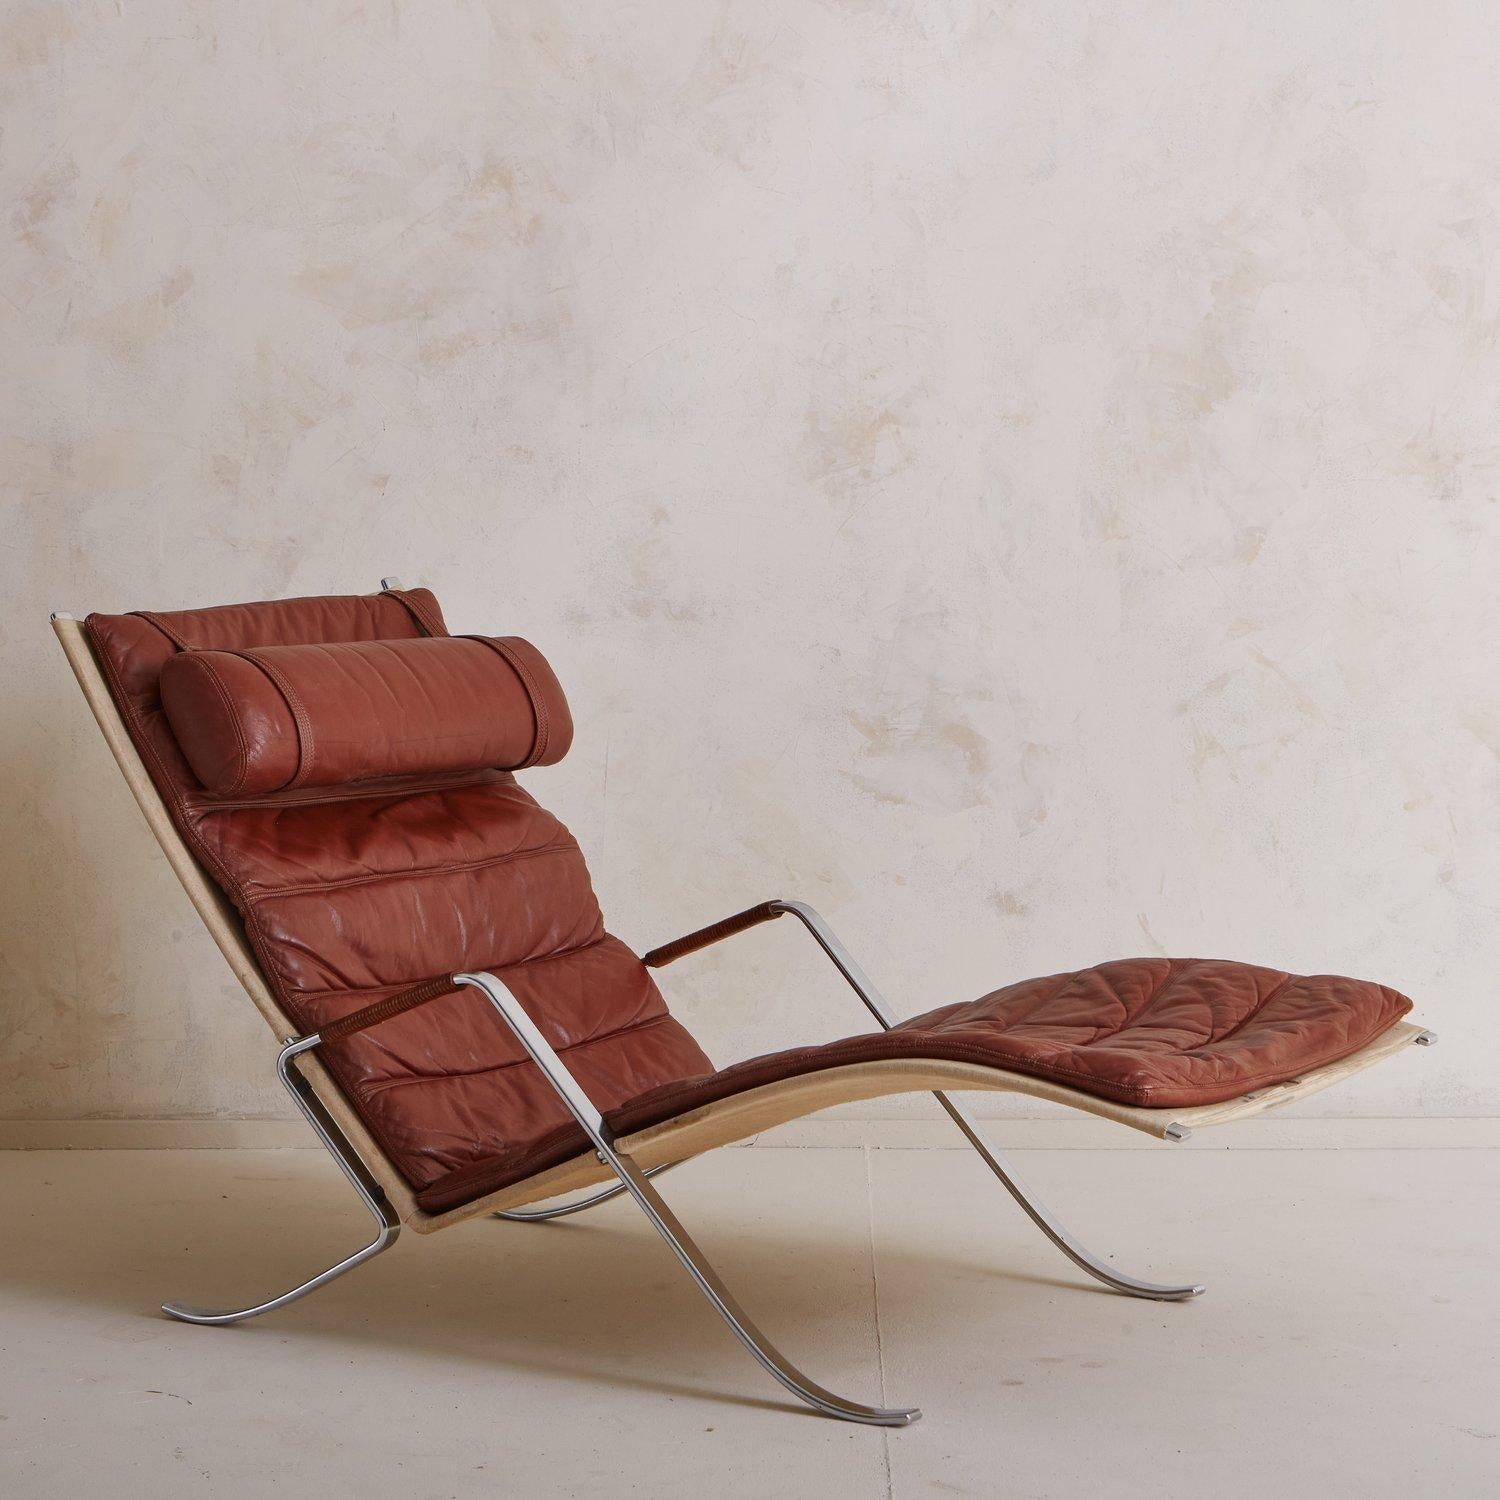 Ein Vintage-Grashüpfer-Sessel von Preben Fabricius und Jørgen Kastholm für Kill International. Diese skulpturale Lounge verfügt über ein wunderschönes patiniertes Lederkissen mit geriffelten Details und eine abnehmbare Kopfstütze. Das Gestell